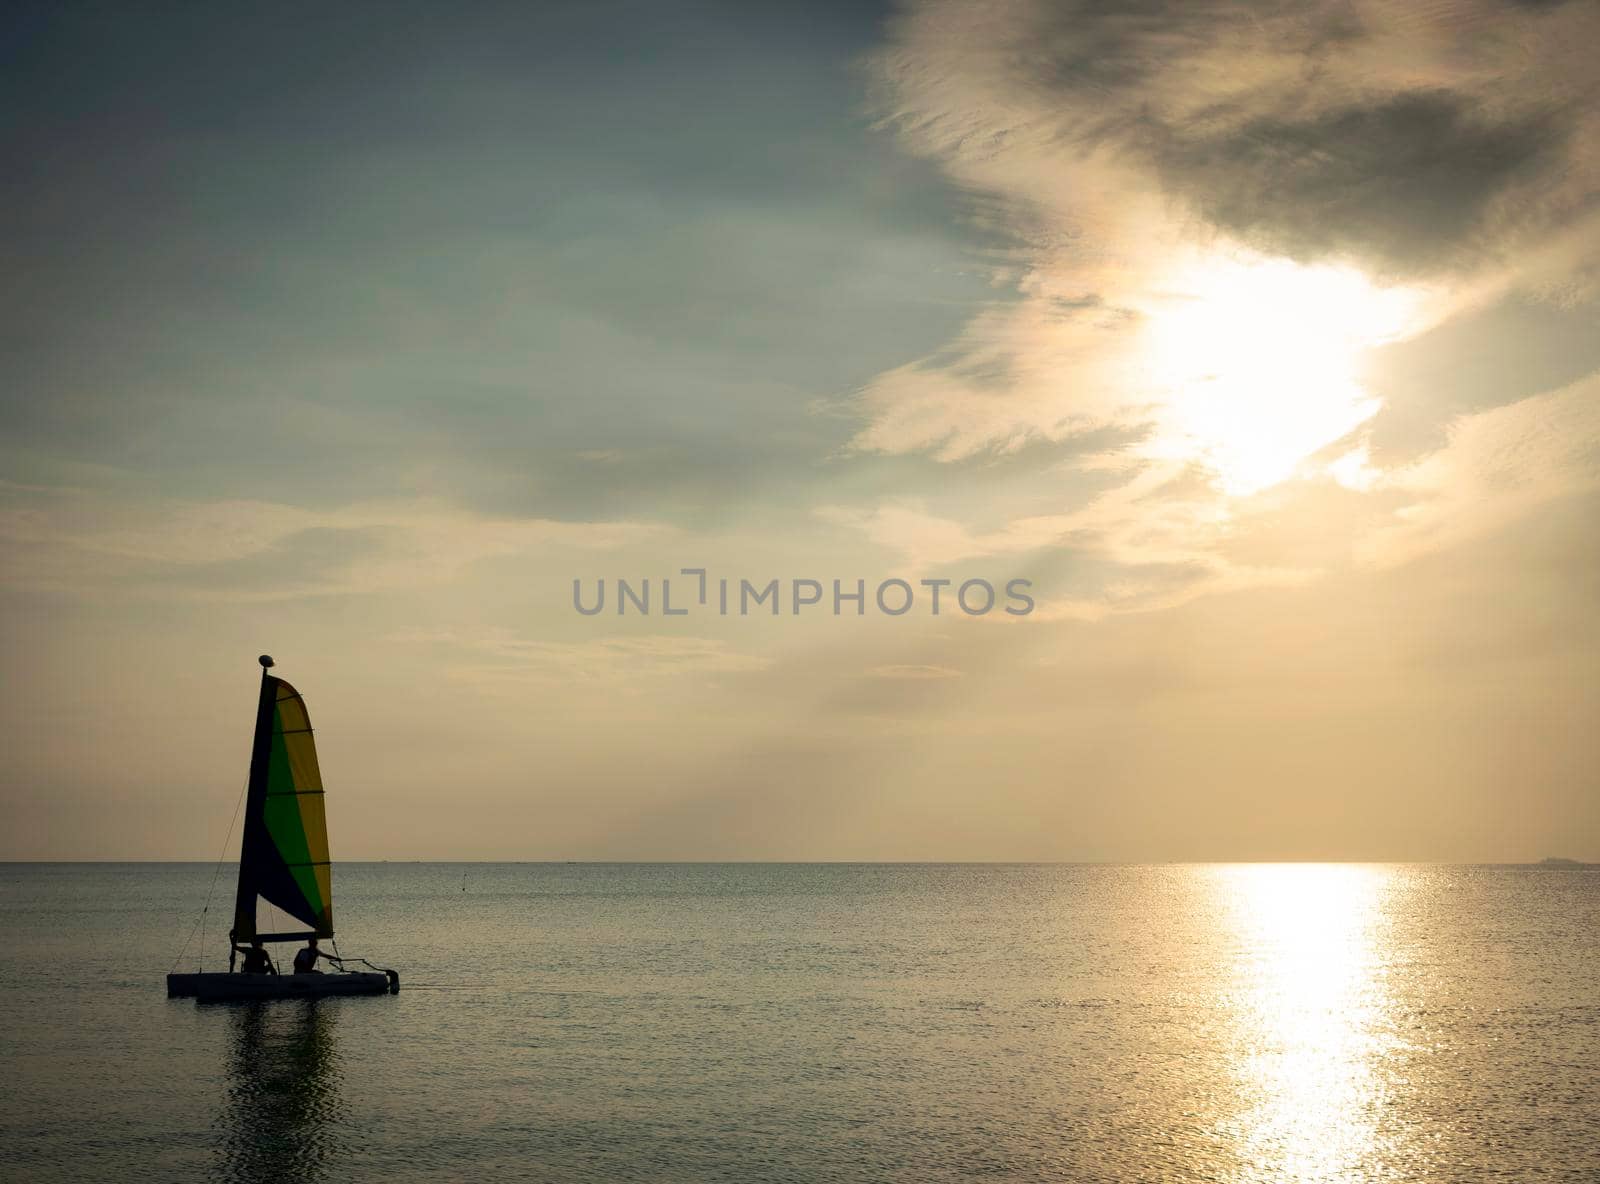 sailing boat at sunset in phuket coast thailand by jackmalipan